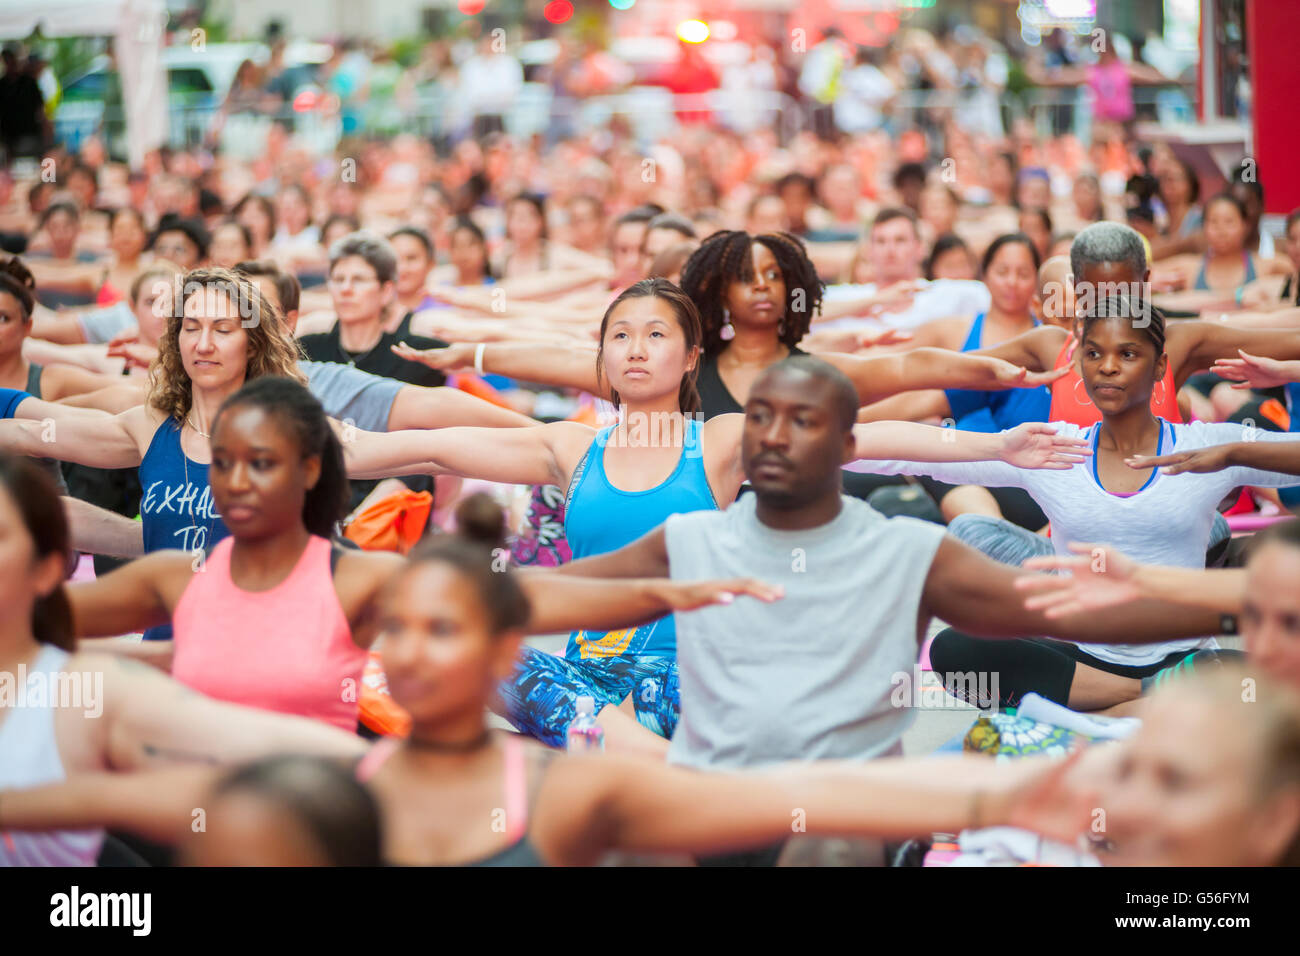 New York, USA. 20 Juin, 2016. Des milliers de pratiquants de yoga pack Times Square à New York pour pratiquer le yoga sur le premier jour de l'été, lundi 20 juin, 2016. La 14e conférence annuelle de Solstice dans Times Square, 'Mind sur la folie", s'étend la capacité des yogis pour bloquer le bruit et l'encombrement visuel qui les entourent dans le carrefour du monde. (© Richard B. Levine) Banque D'Images